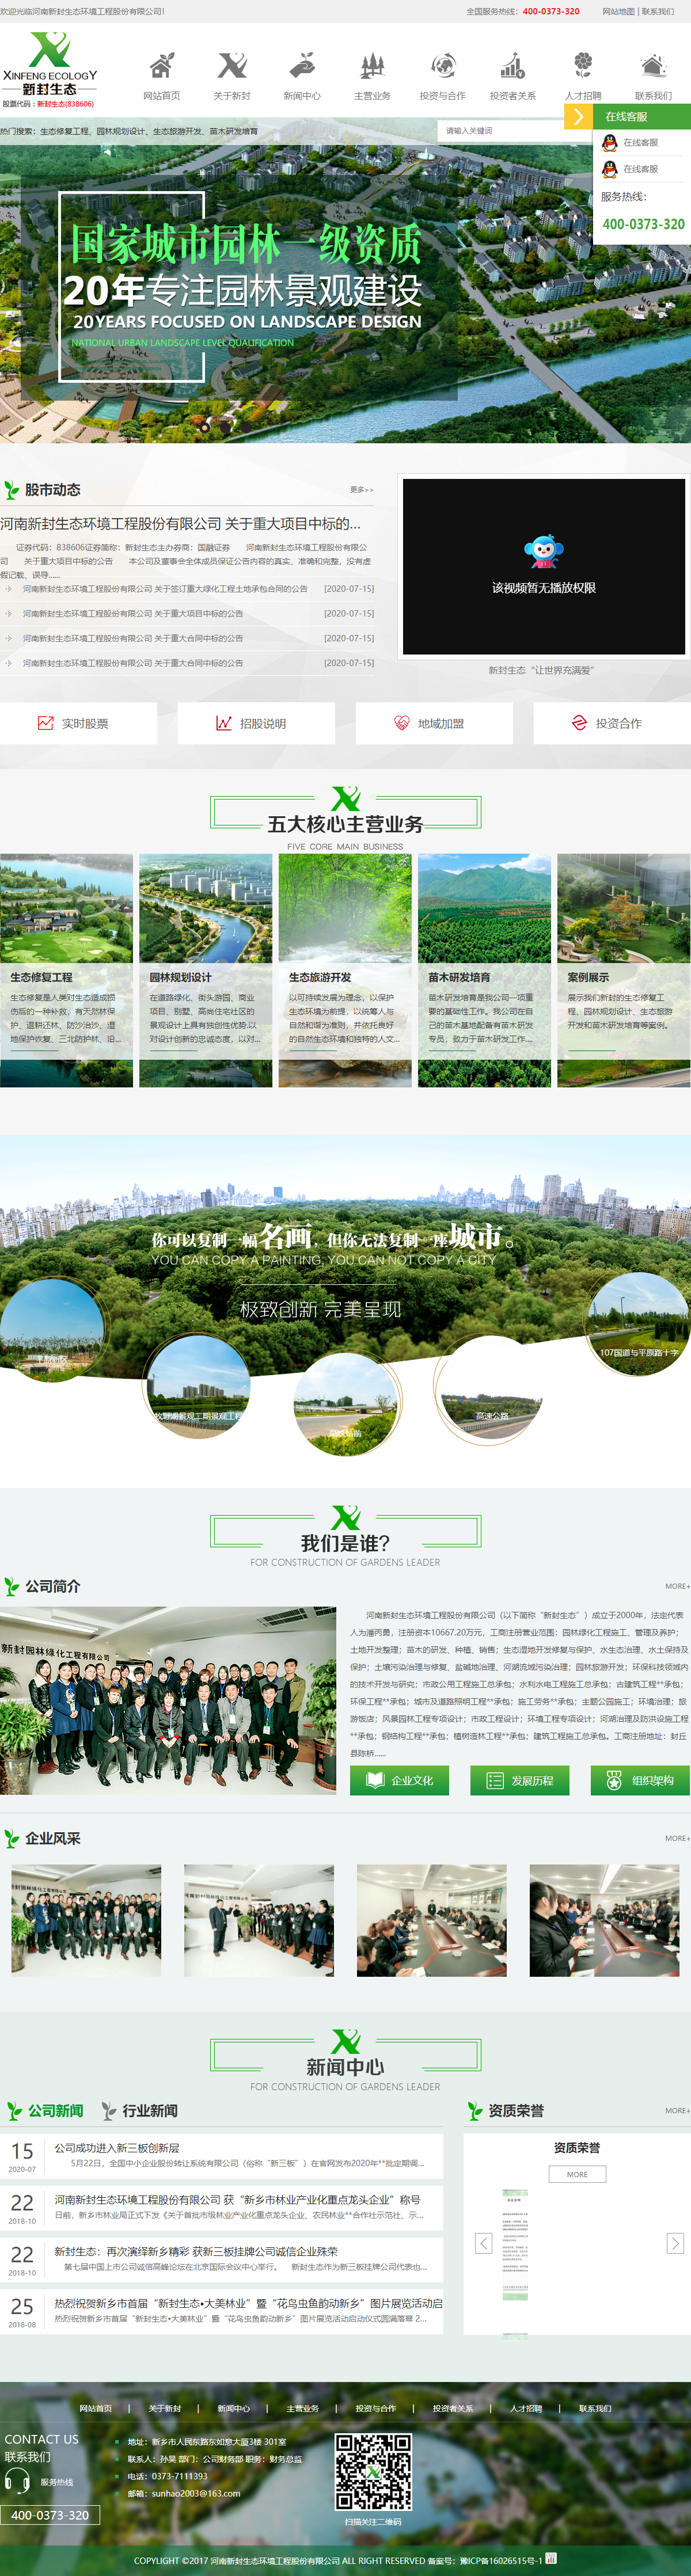 河南新封生态环境工程股份有限公司网站案例